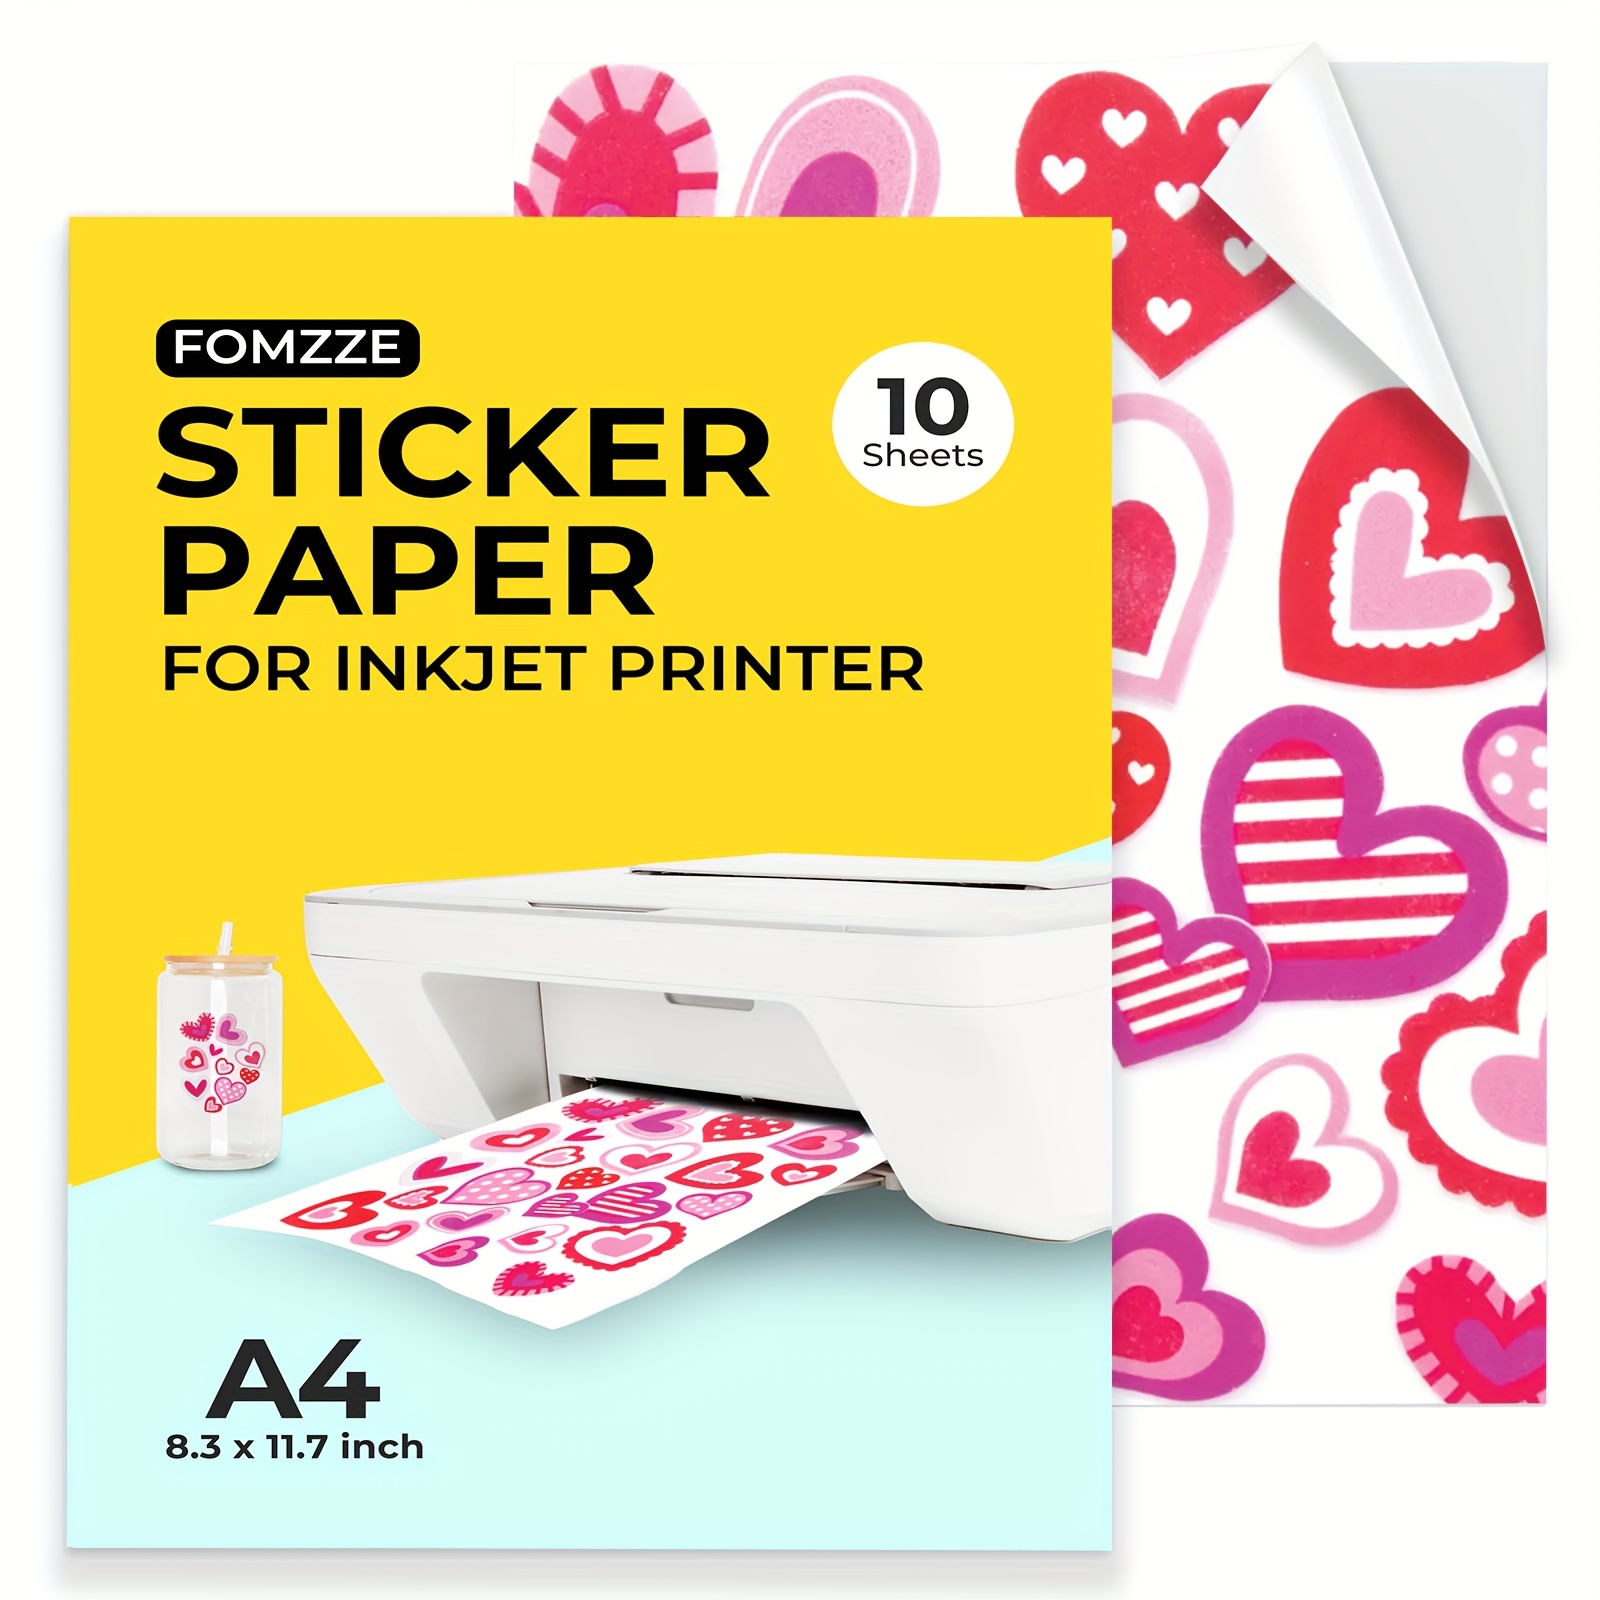 Printable Vinyl Sticker Paper For Inkjet Printer - Glossy White